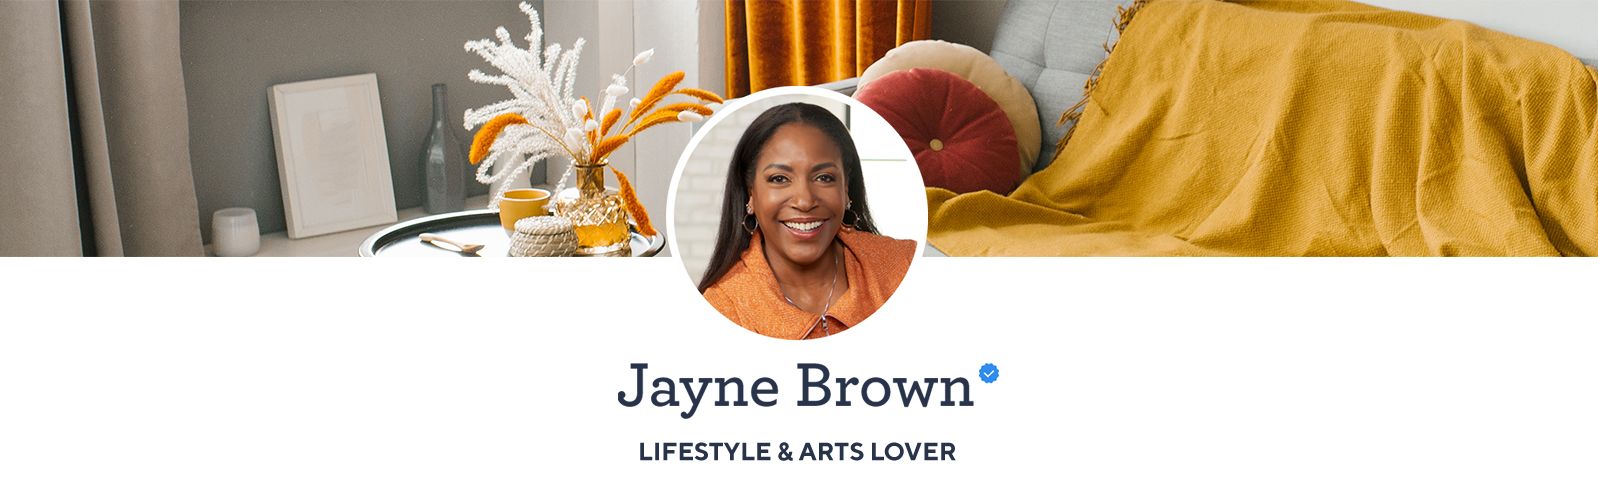 Jayne Brown - Lifestyle & Arts Lover